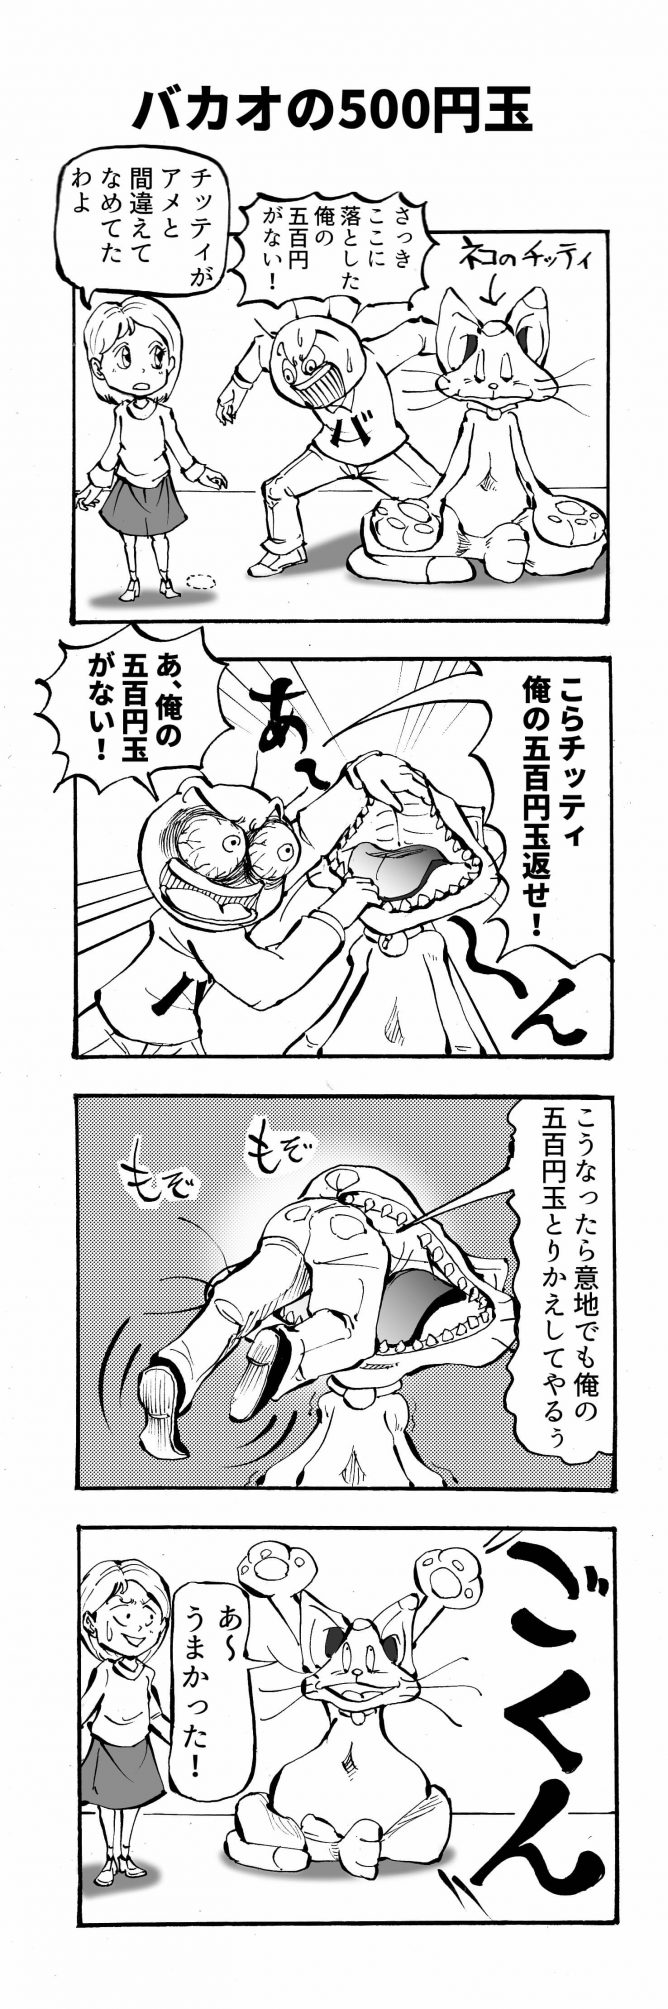 バカオの500円玉四コマ漫画